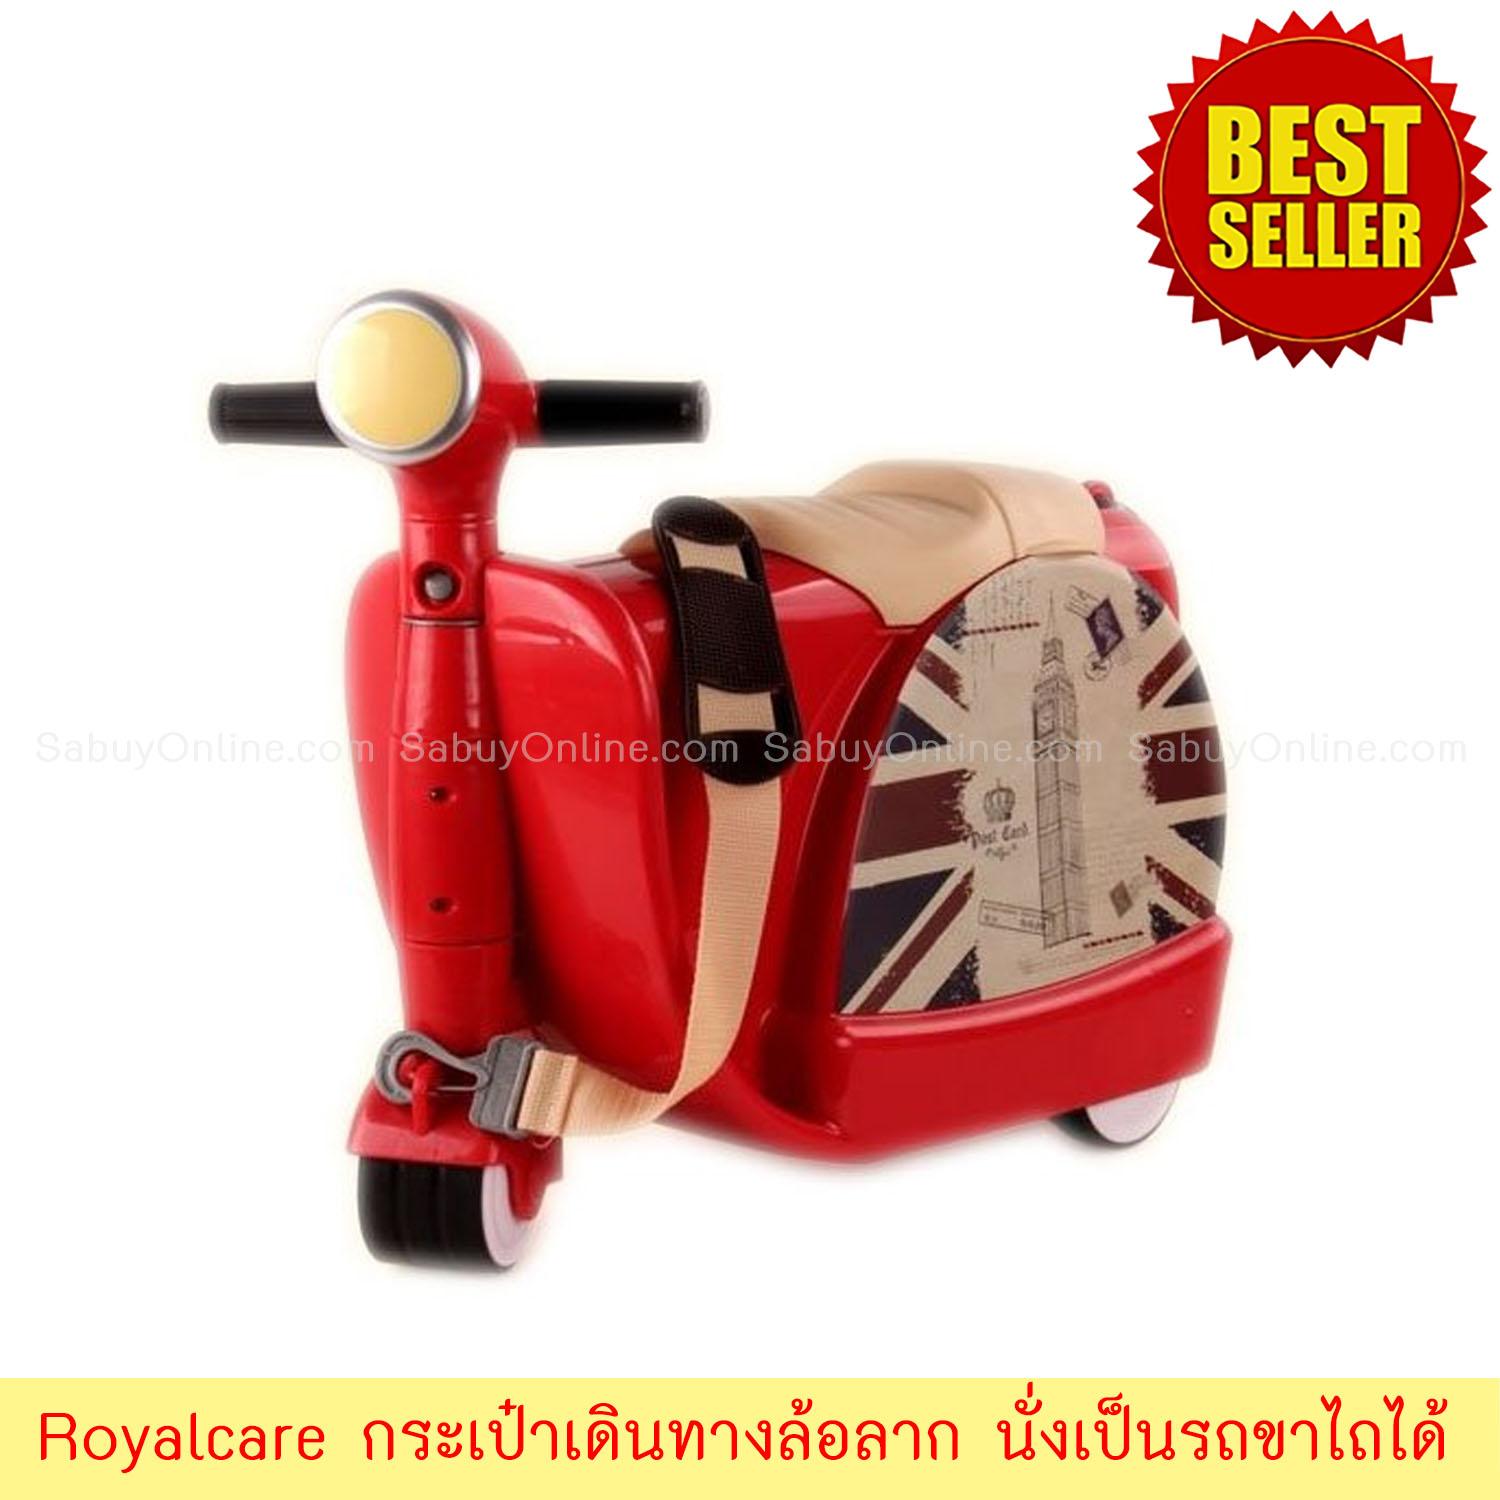 Royalcare กระเป๋าเดินทางล้อลาก มีล้อนั่งเป็นรถขาไถได้  สี สีแดง